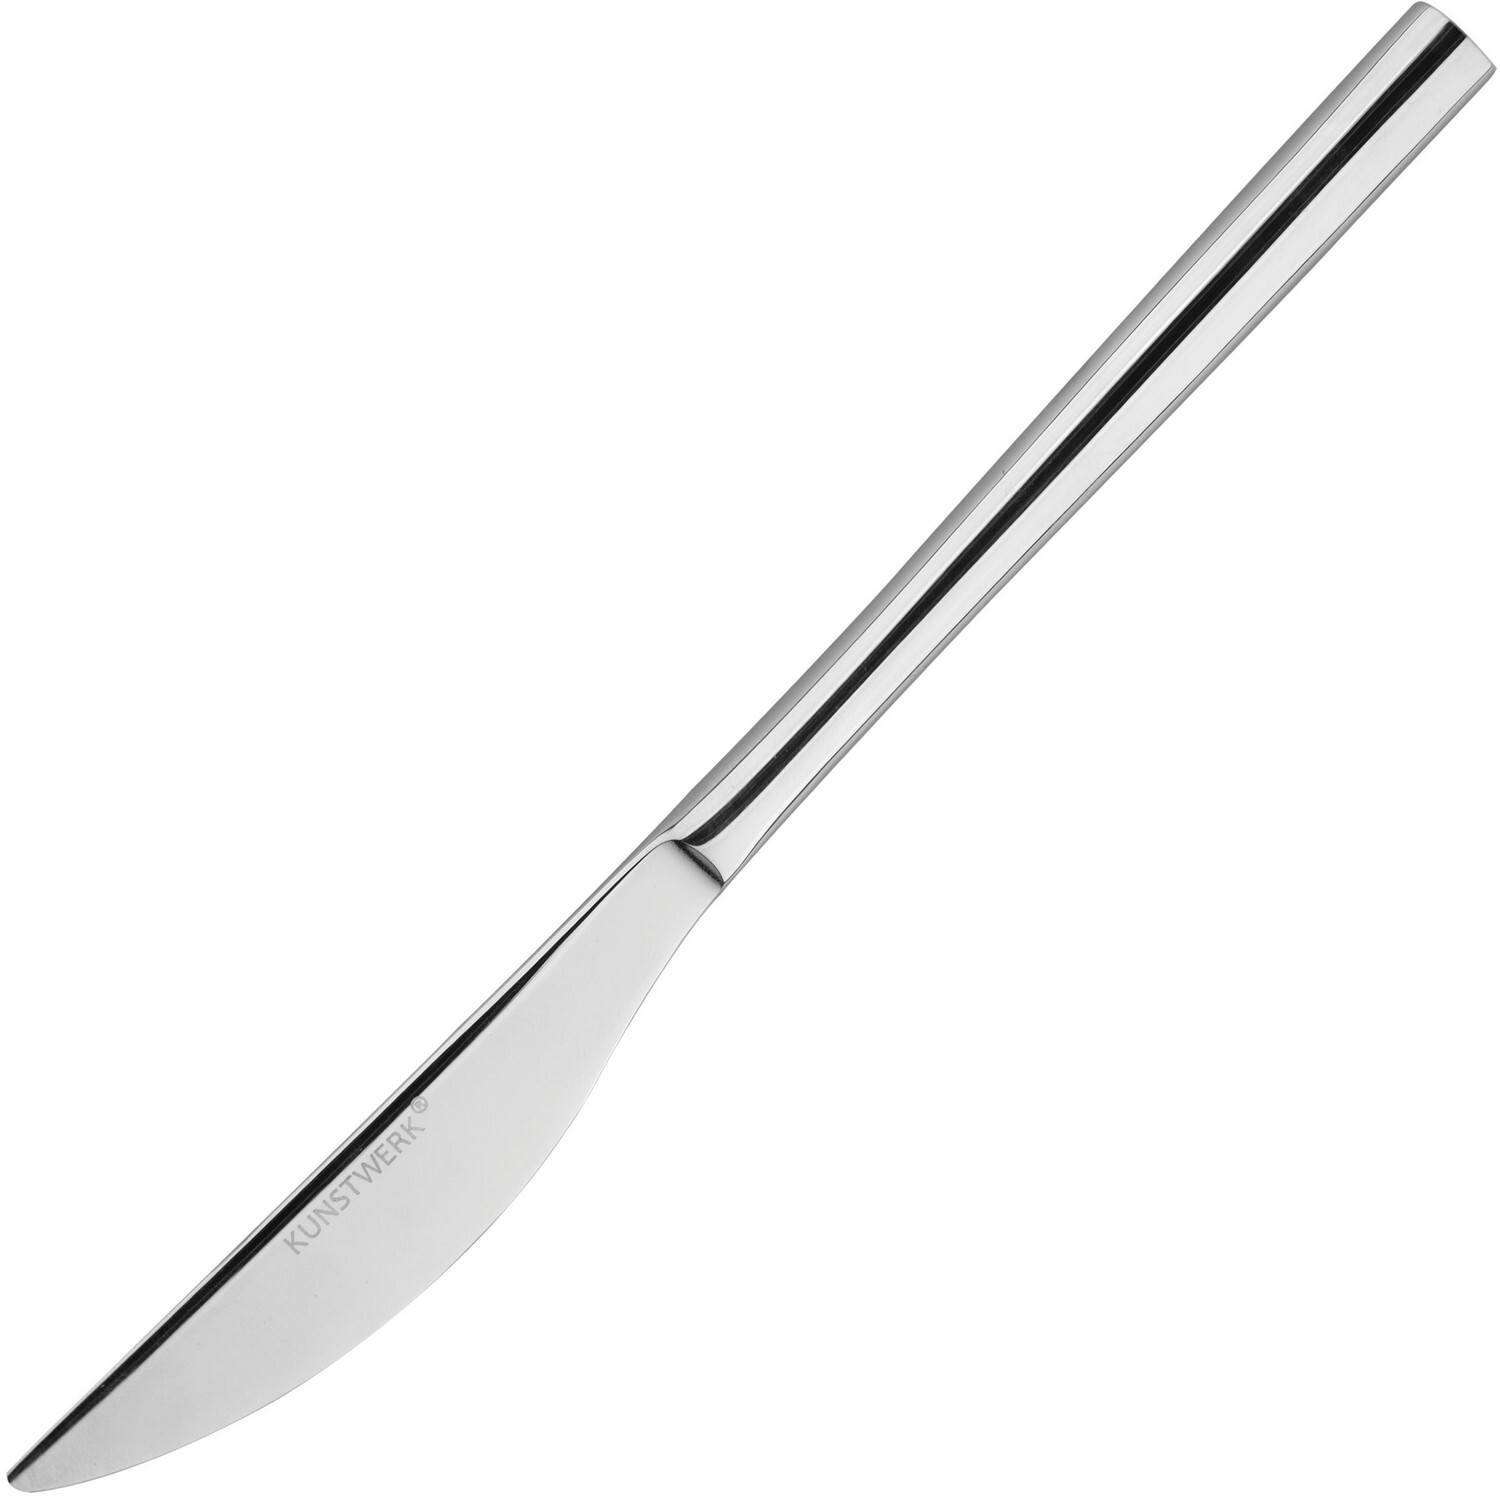 Нож десертный Kunstwerk Калипсо длина 21см нерж.сталь